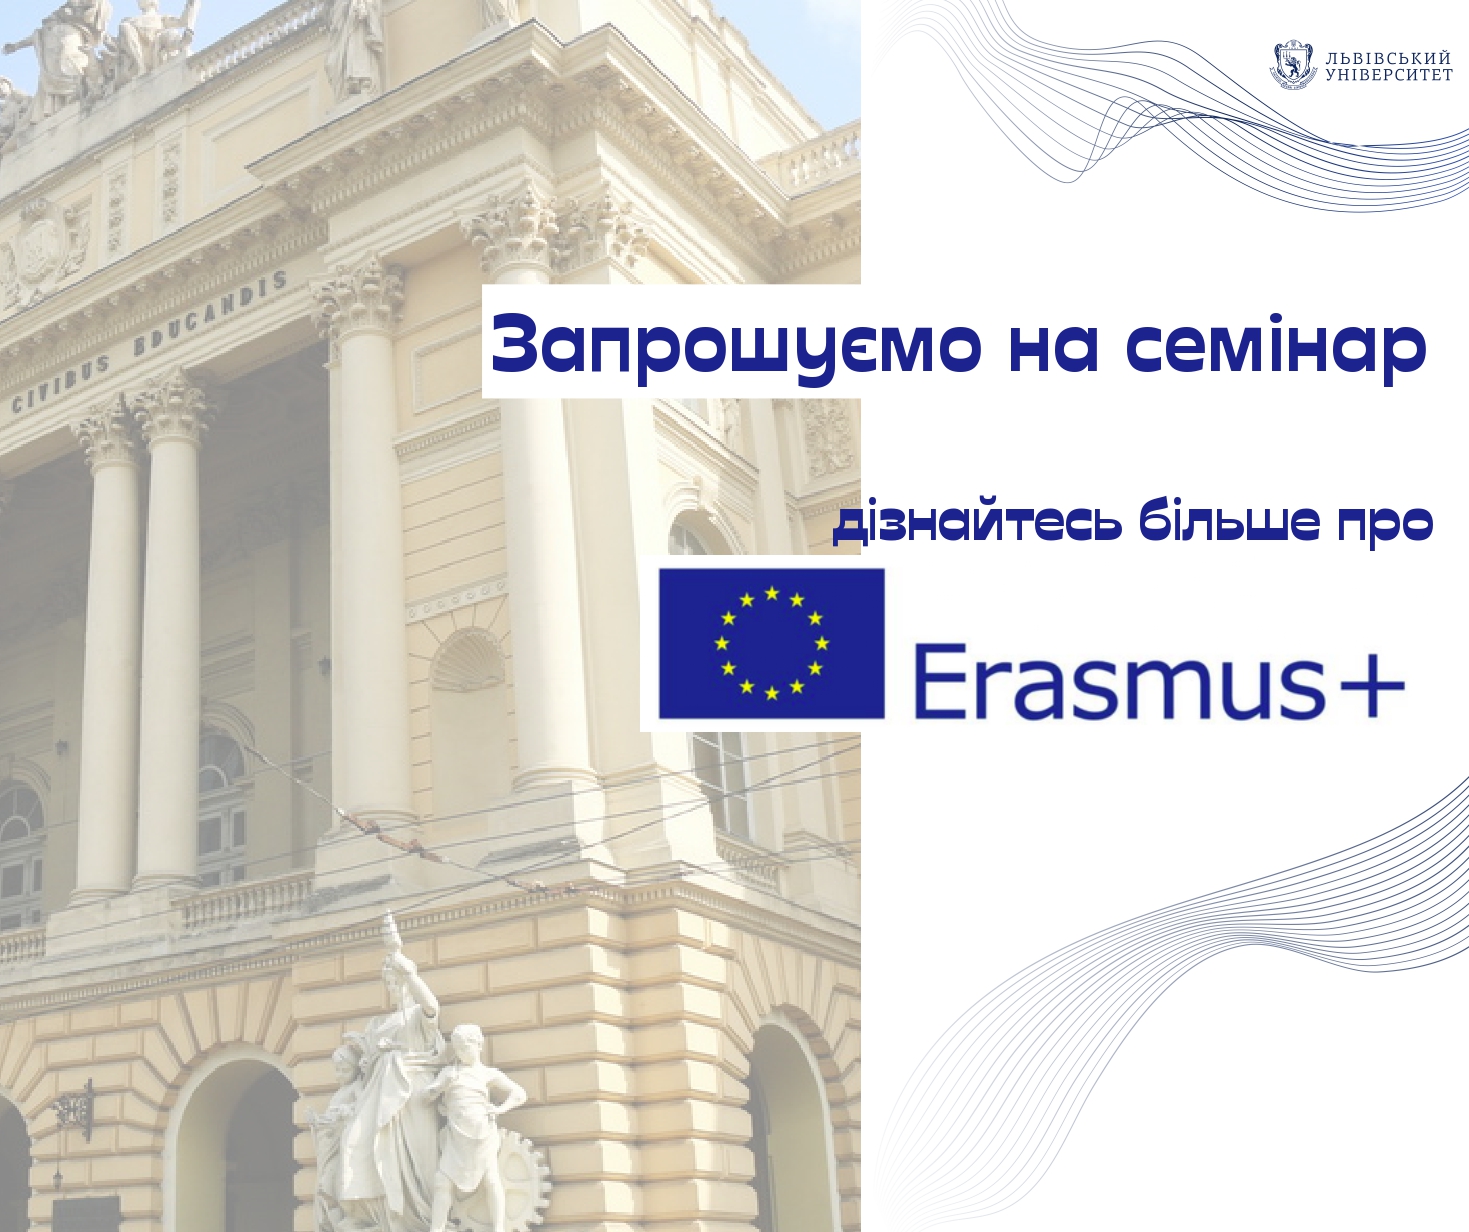 Дізнайтесь більше про ERASMUS+